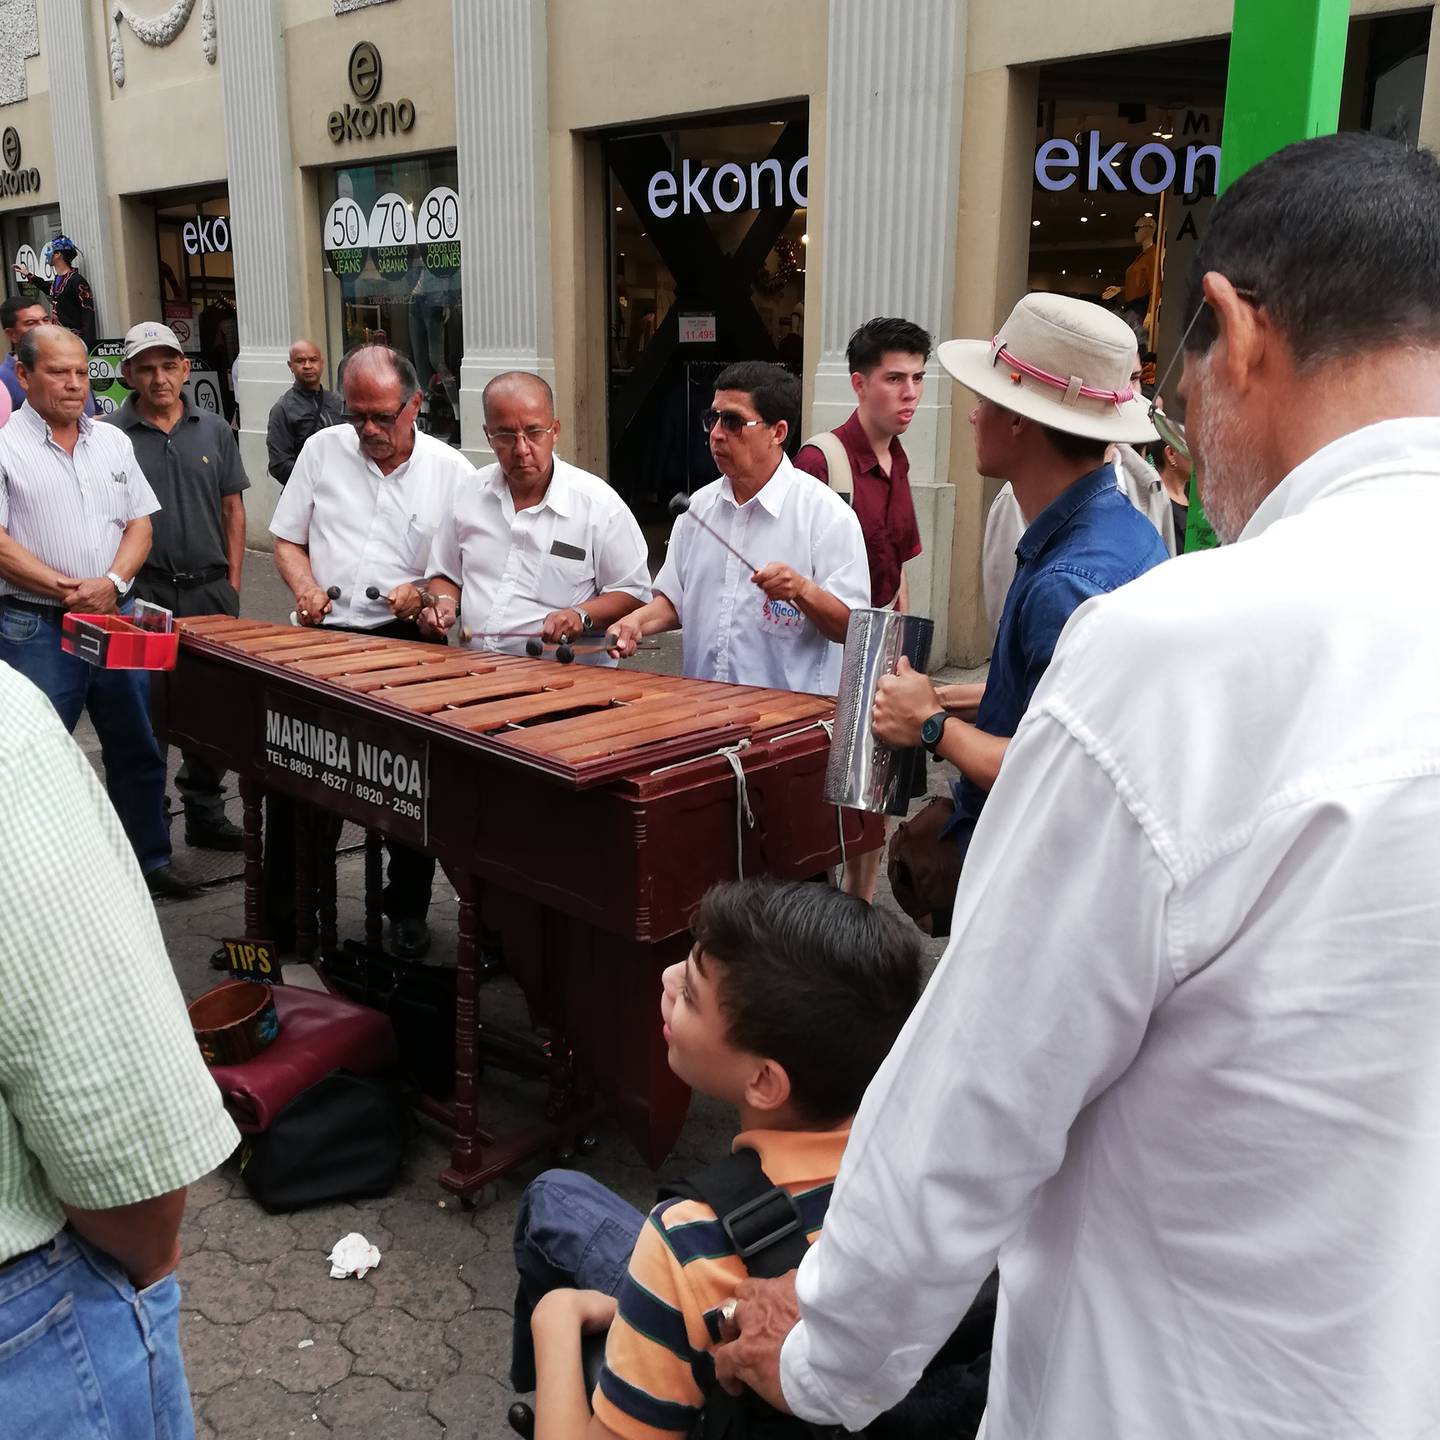 30 de noviembre del 2019, Día nacional de la marimba. La marimba Nicoa alegró Chepe, en la foto, Ramón Ordoñez, Melvin Villarreal, Olman Villarreal y Andrés Montoya.